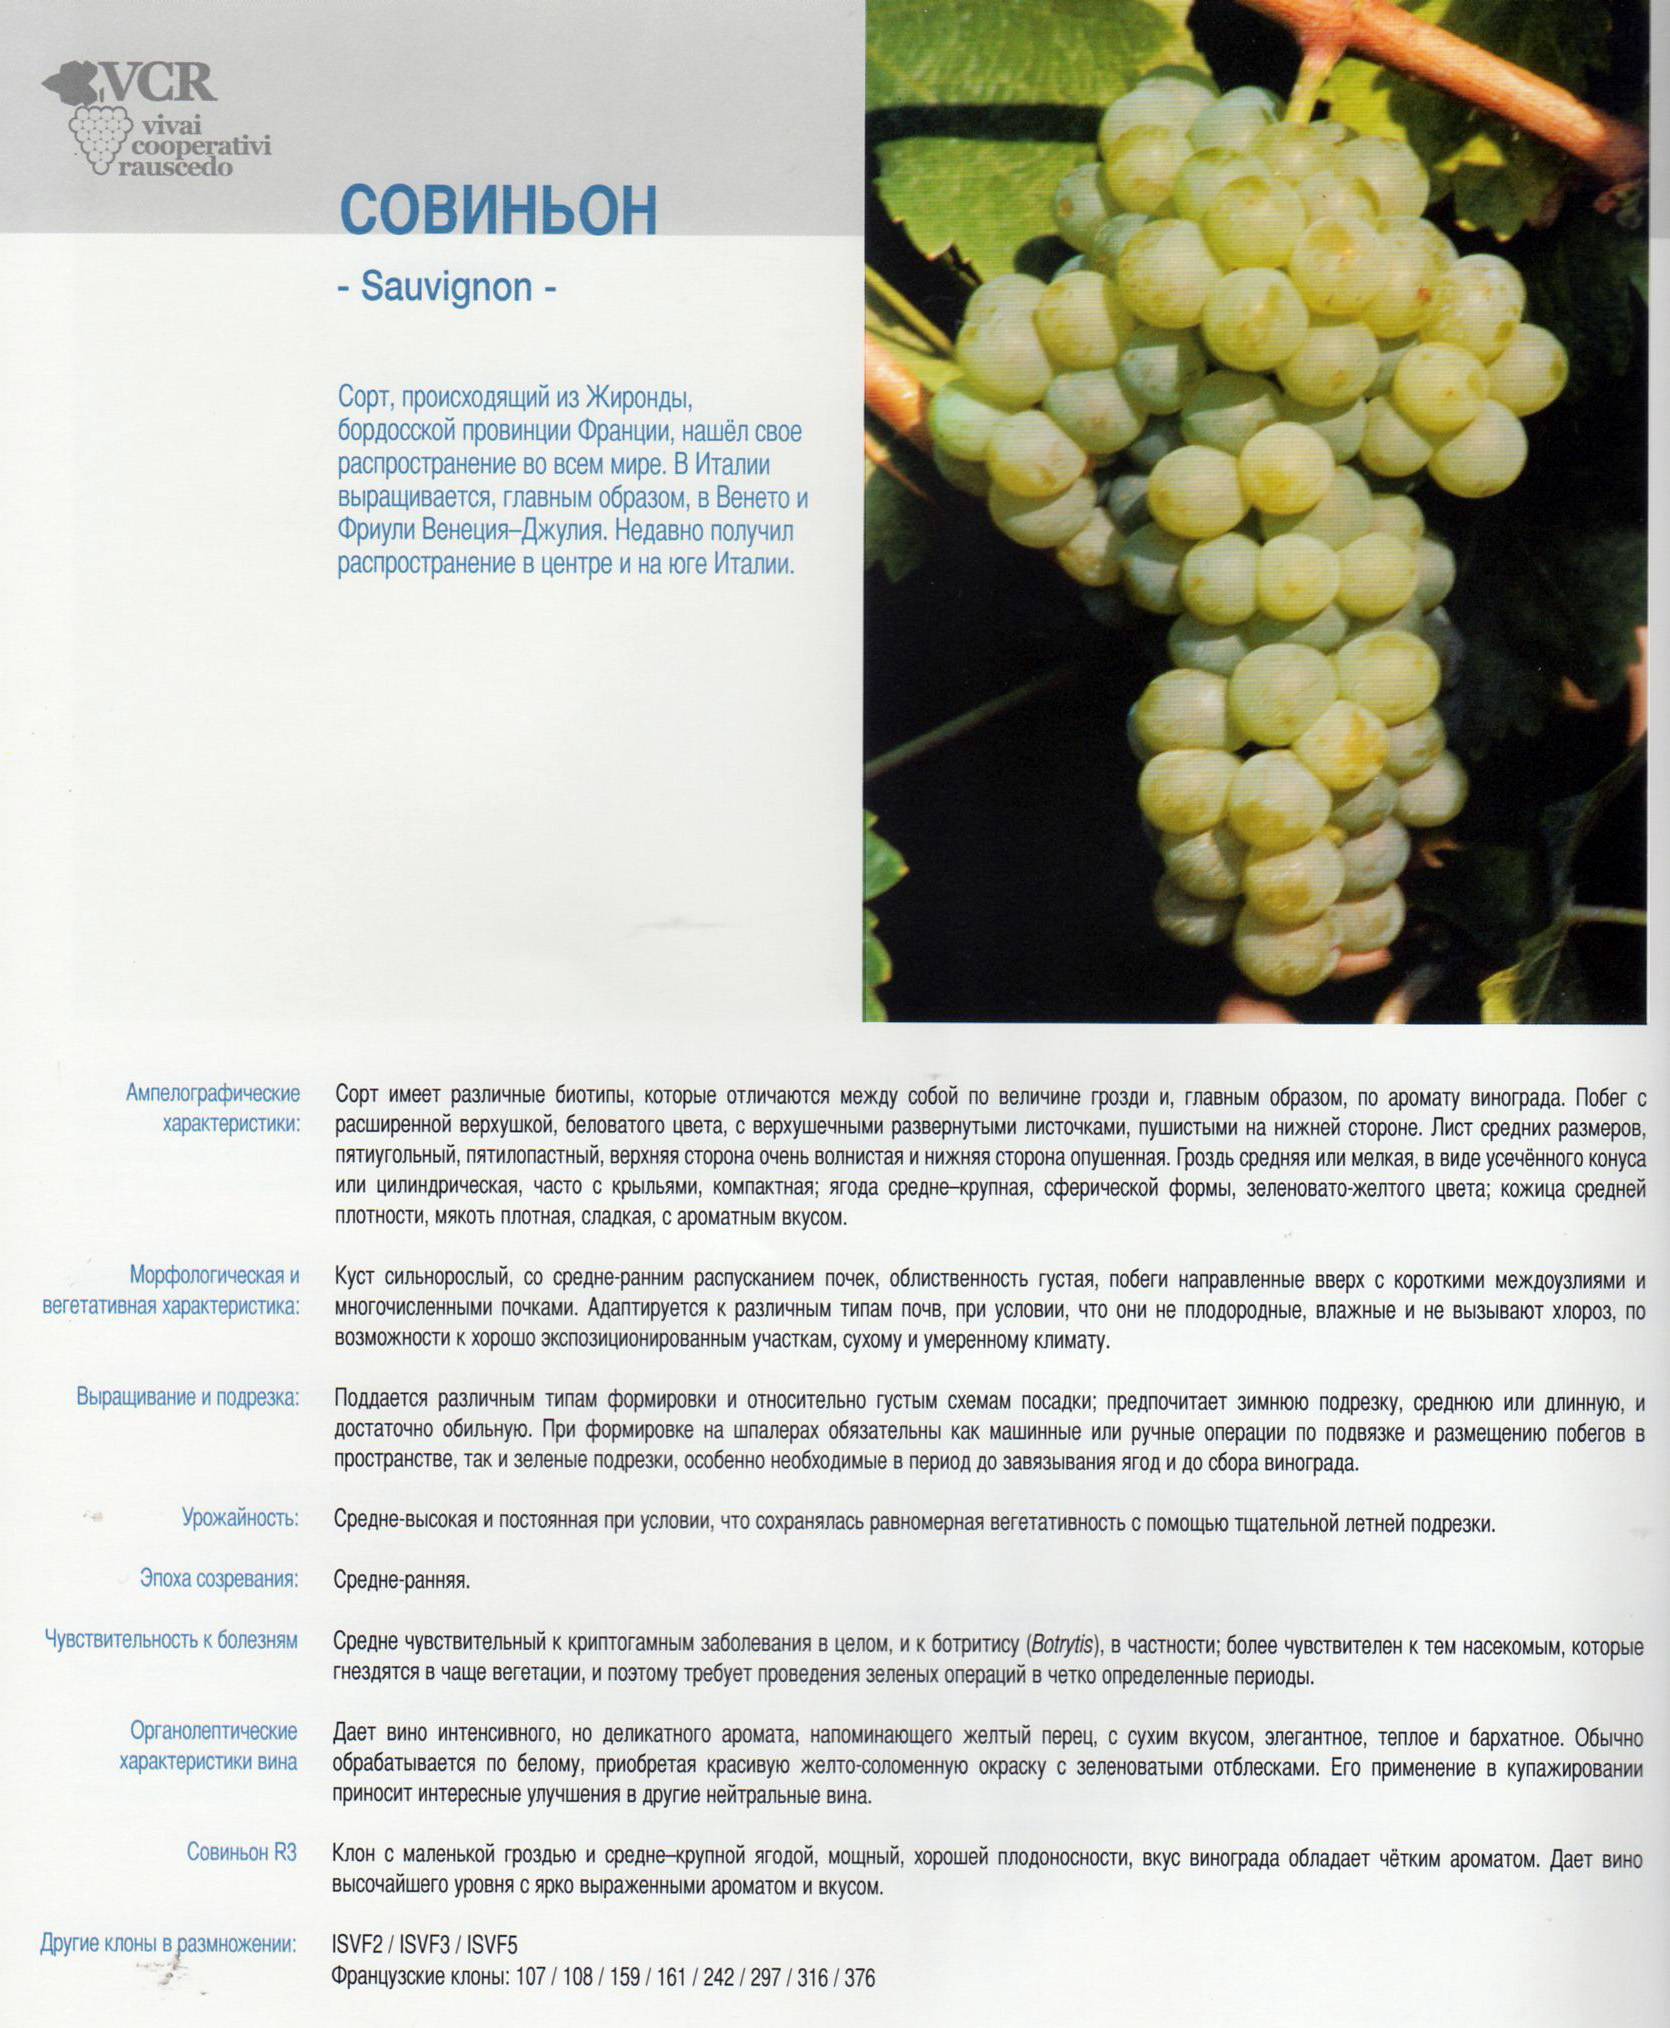 Виноград виктор: описание сорта, фото, выращивание и уход